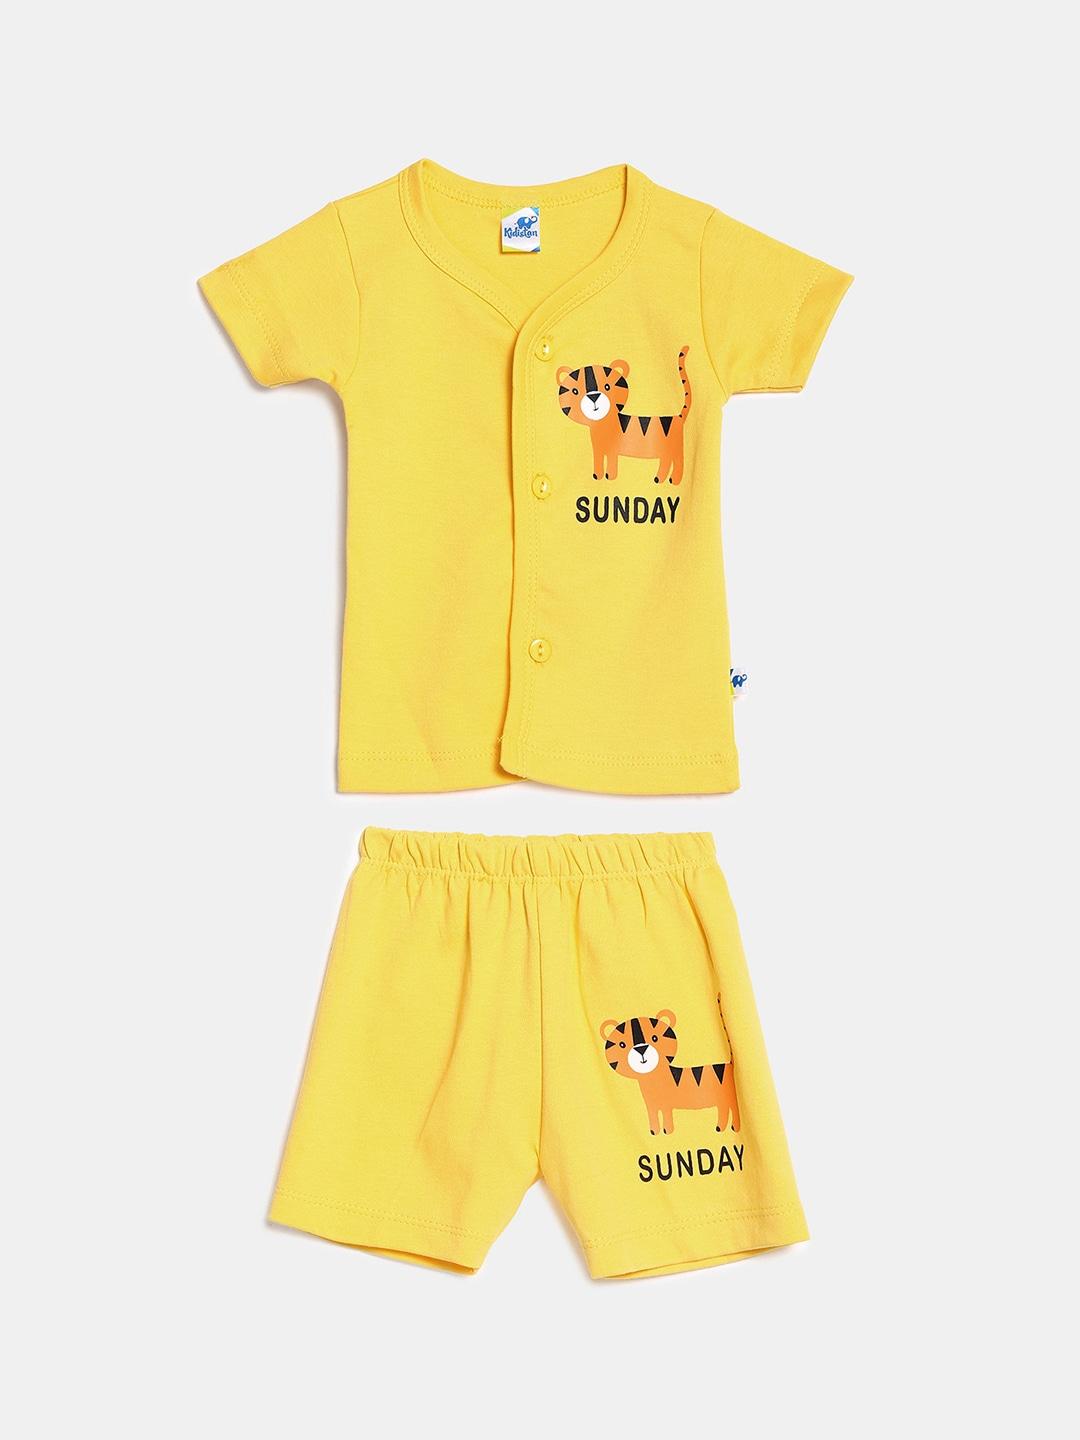 V-Mart Unisex Kids Yellow Clothing Set